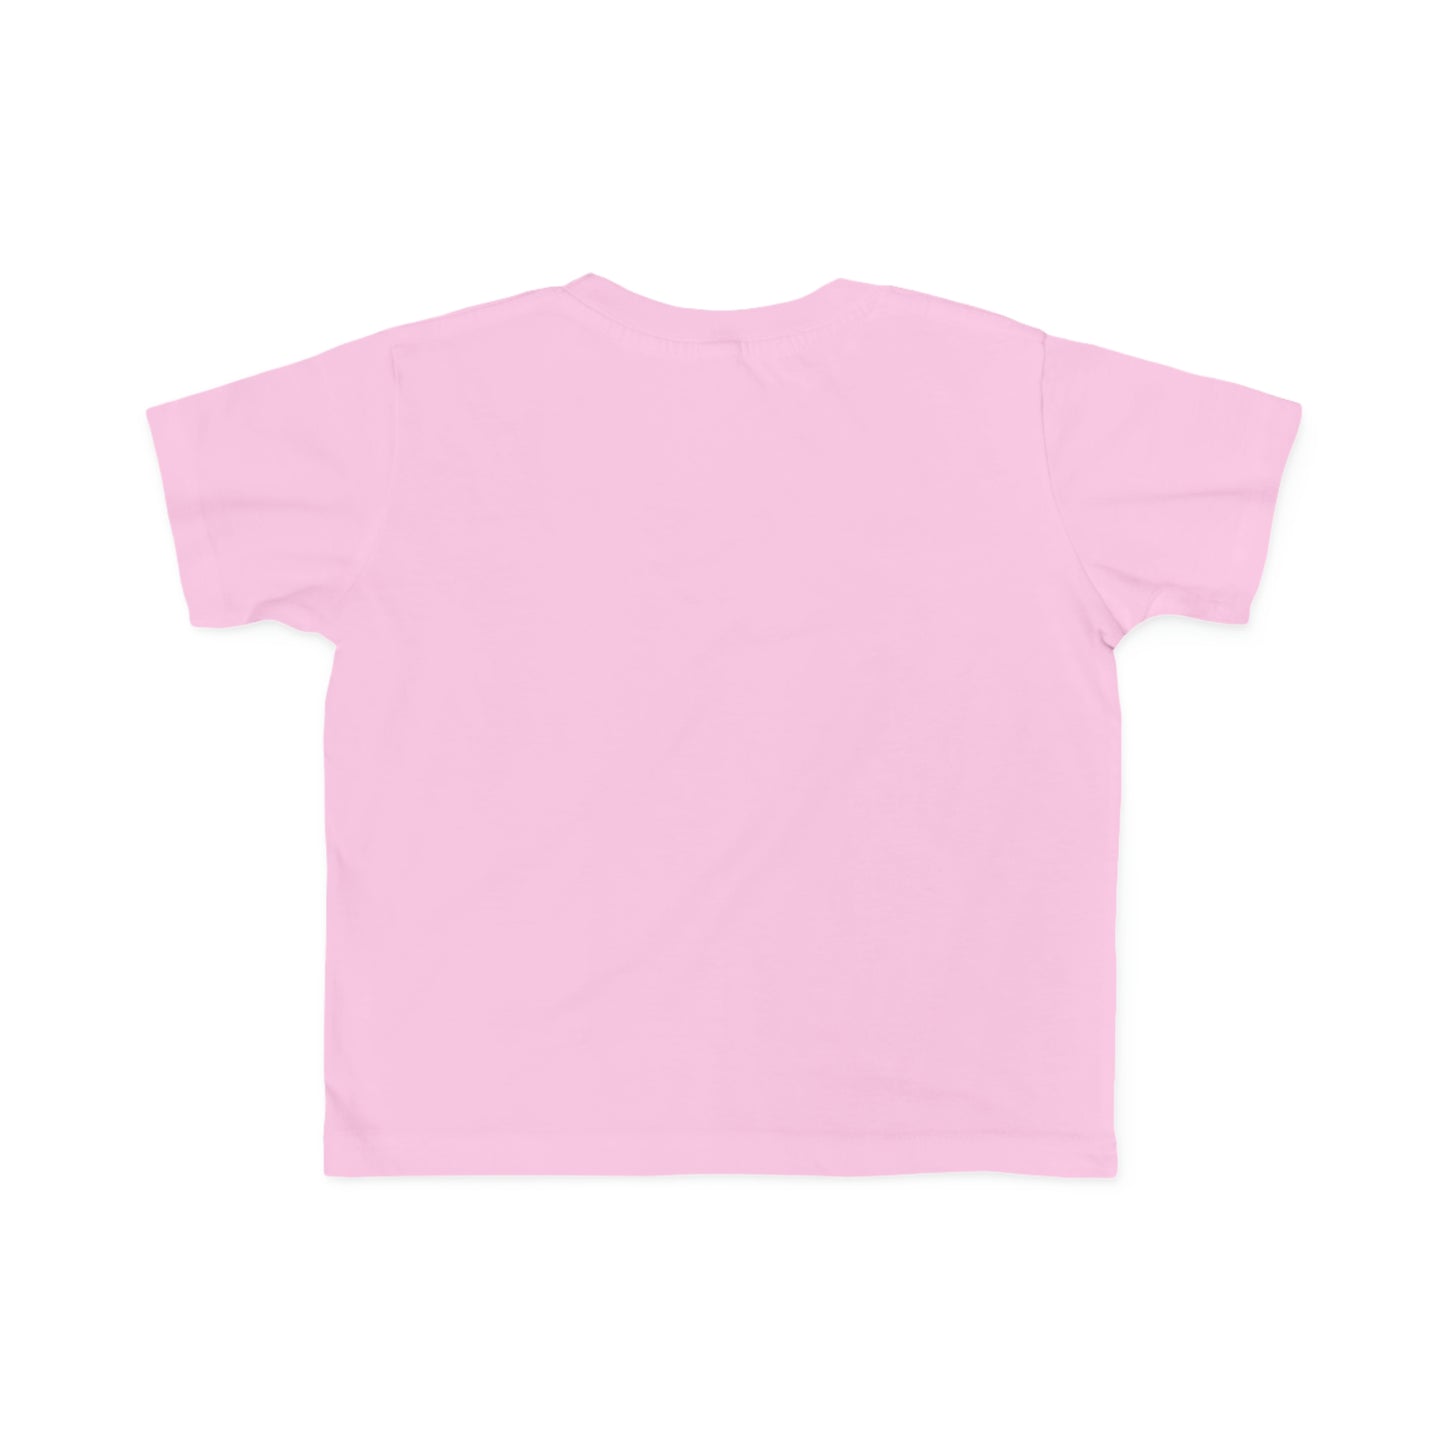 EMPOWERED WOMEN T-shirt - toddler